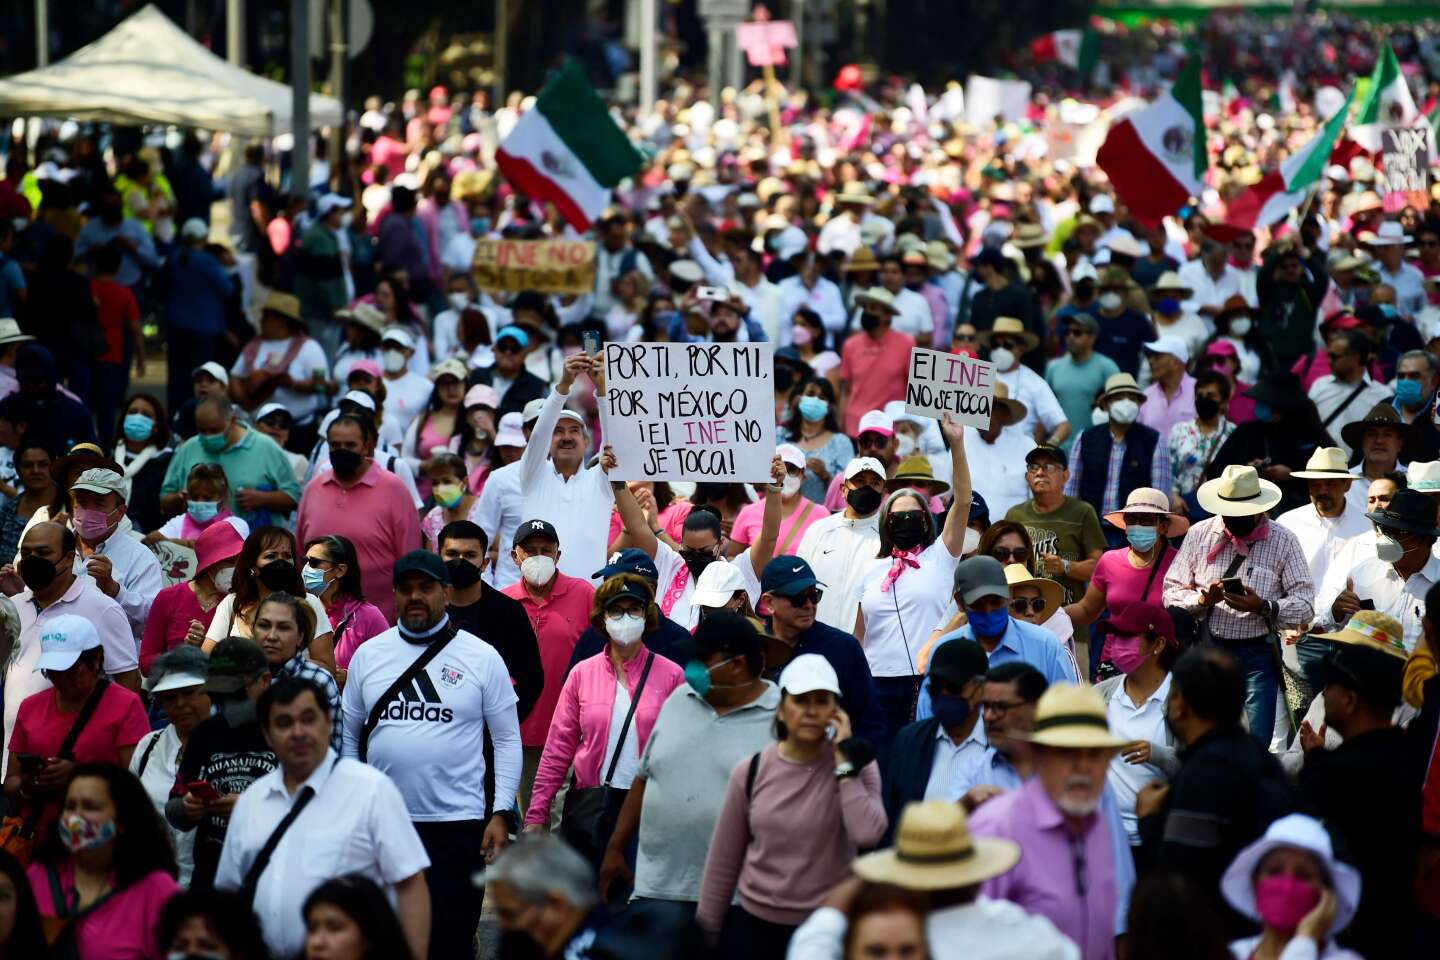 Tienduizenden demonstreren tegen het electorale hervormingsproject van de president